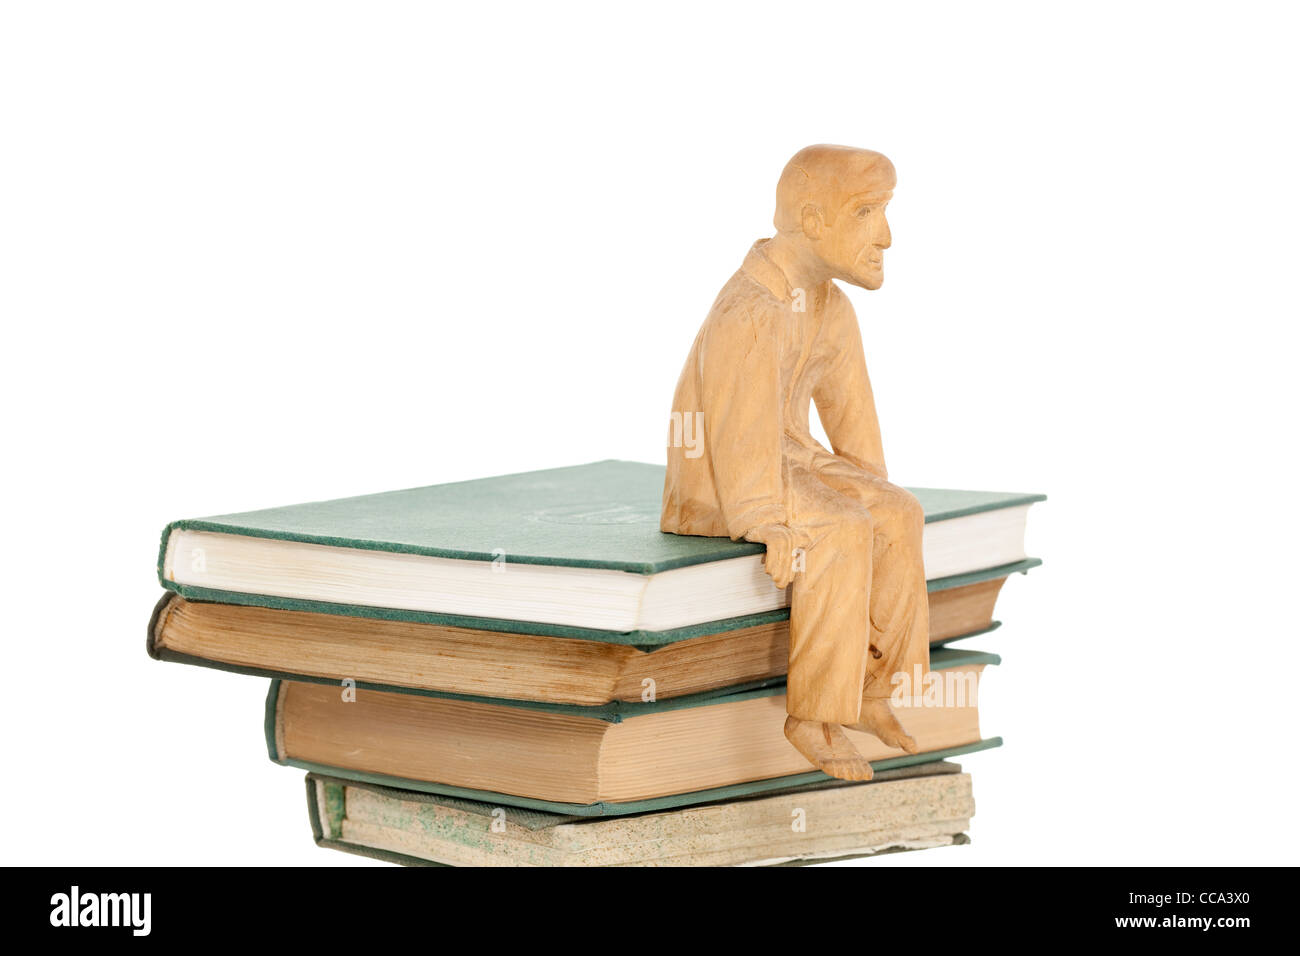 Sculpture en bois, les hommes s'asseoir sur le tas de livres Photo Stock -  Alamy